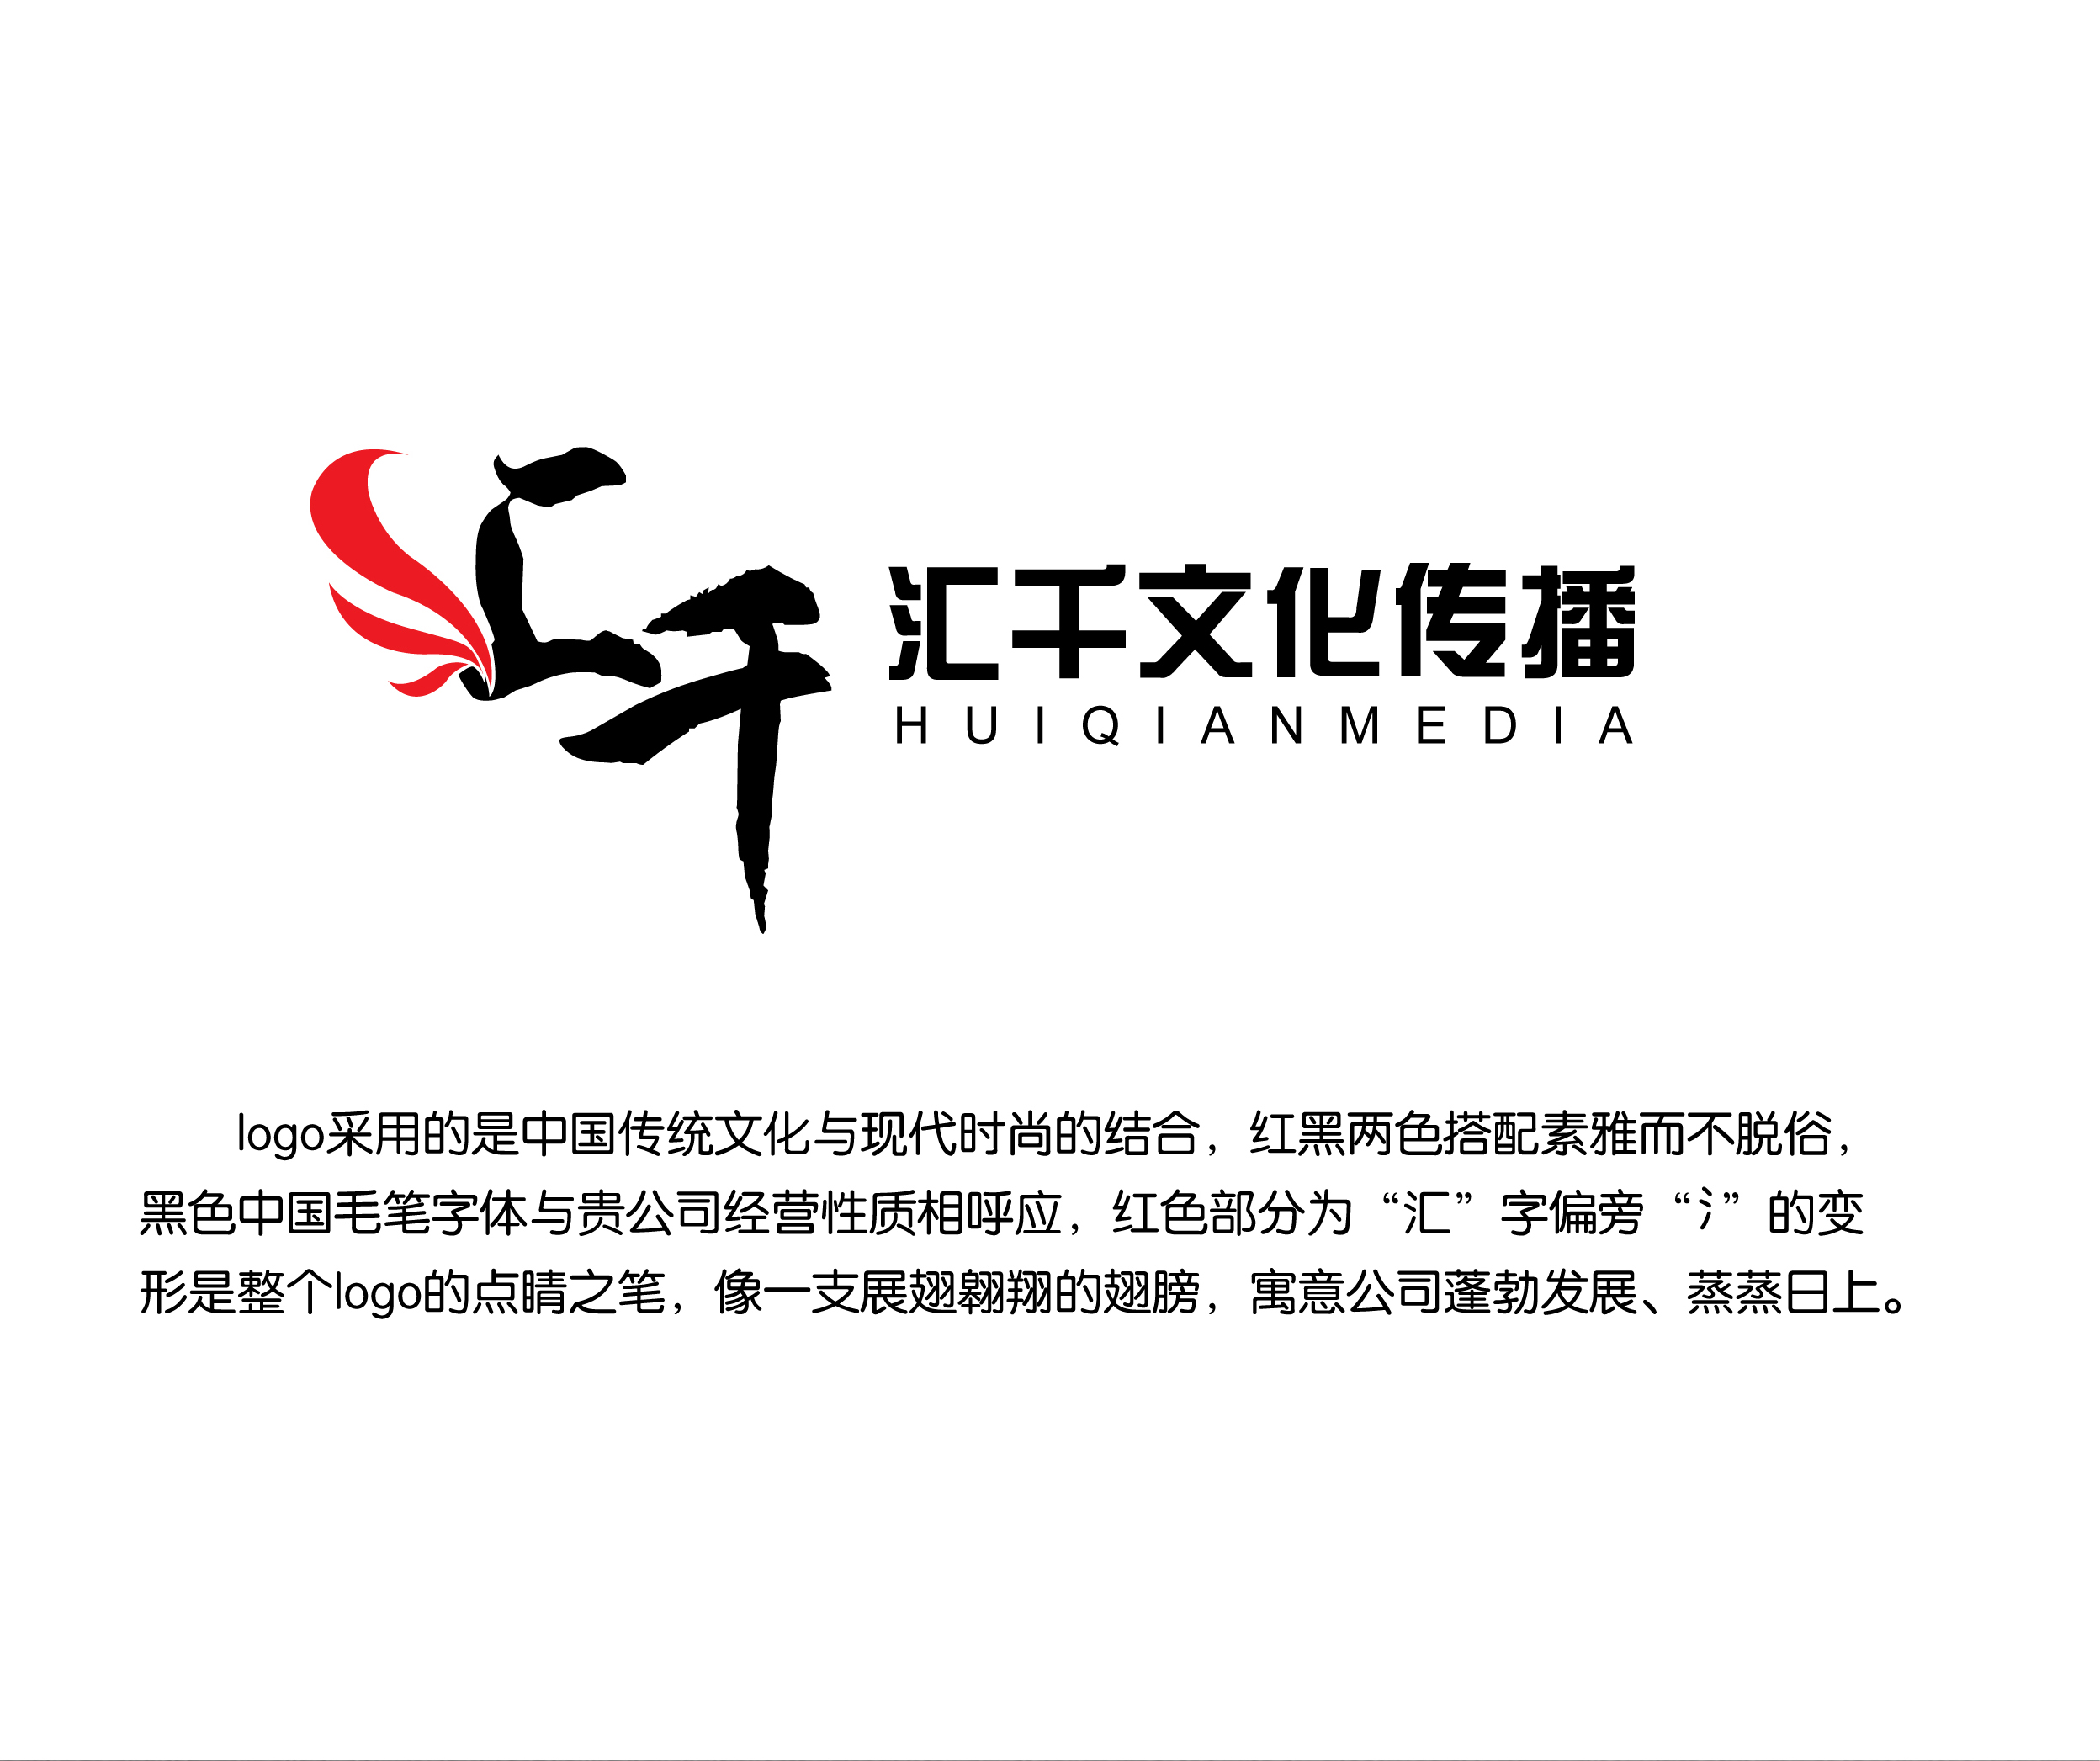 上海汇千文化传播有限公司logo及名片设计